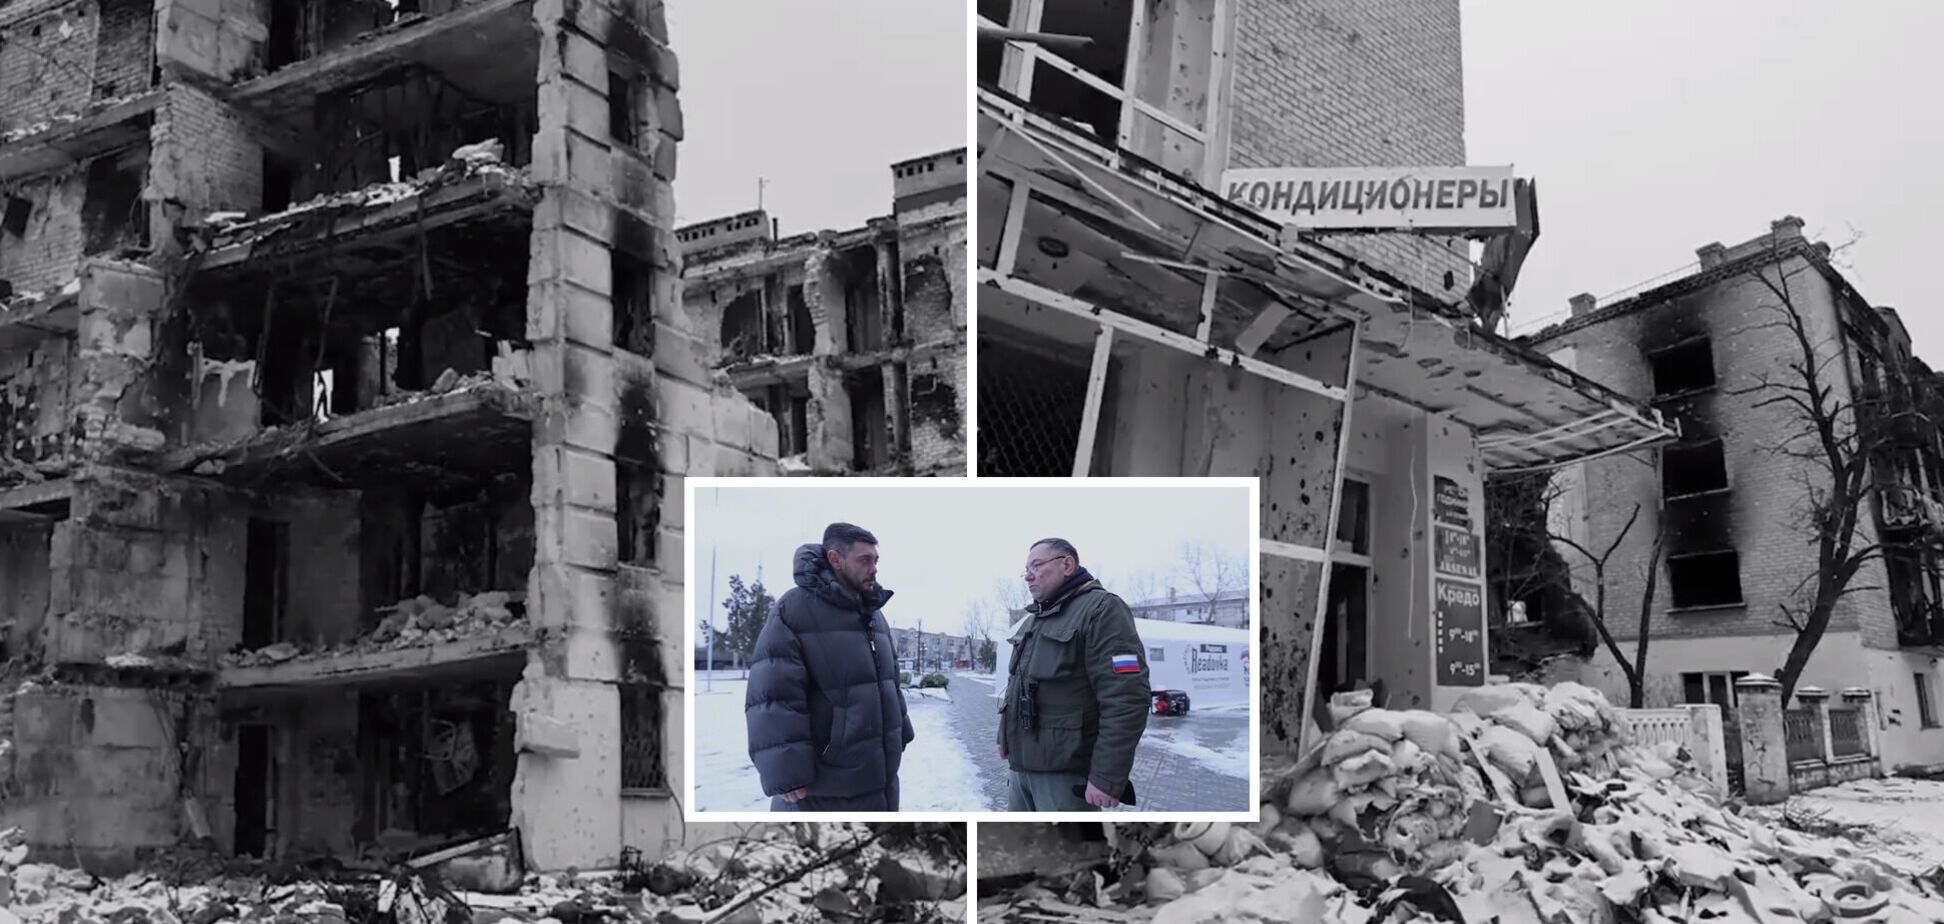 Окупанти цинічно похизувалися відкриттям у зруйнованому Сєвєродонецьку 'пункту обігріву': місто досі живе без світла і опалення. Відео 